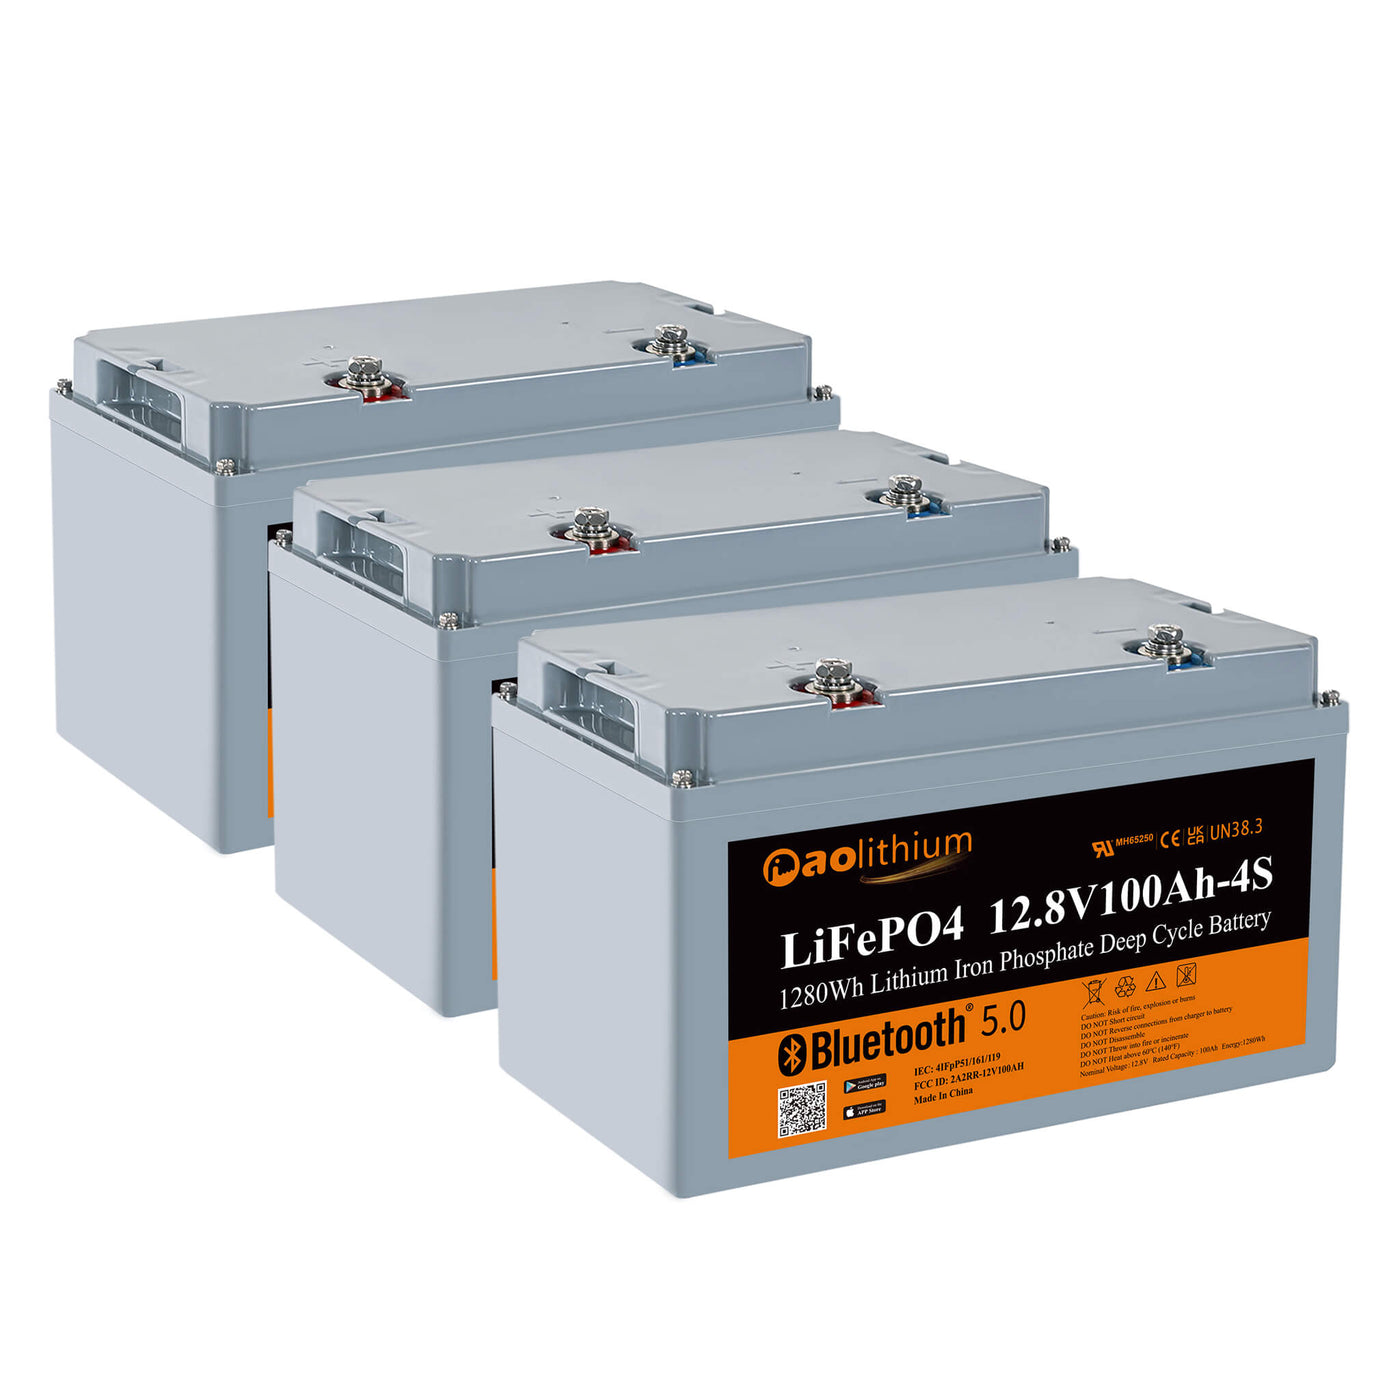 LiTime 12V 300Ah Lithium LiFePO4 Batterie – LiTime-DE